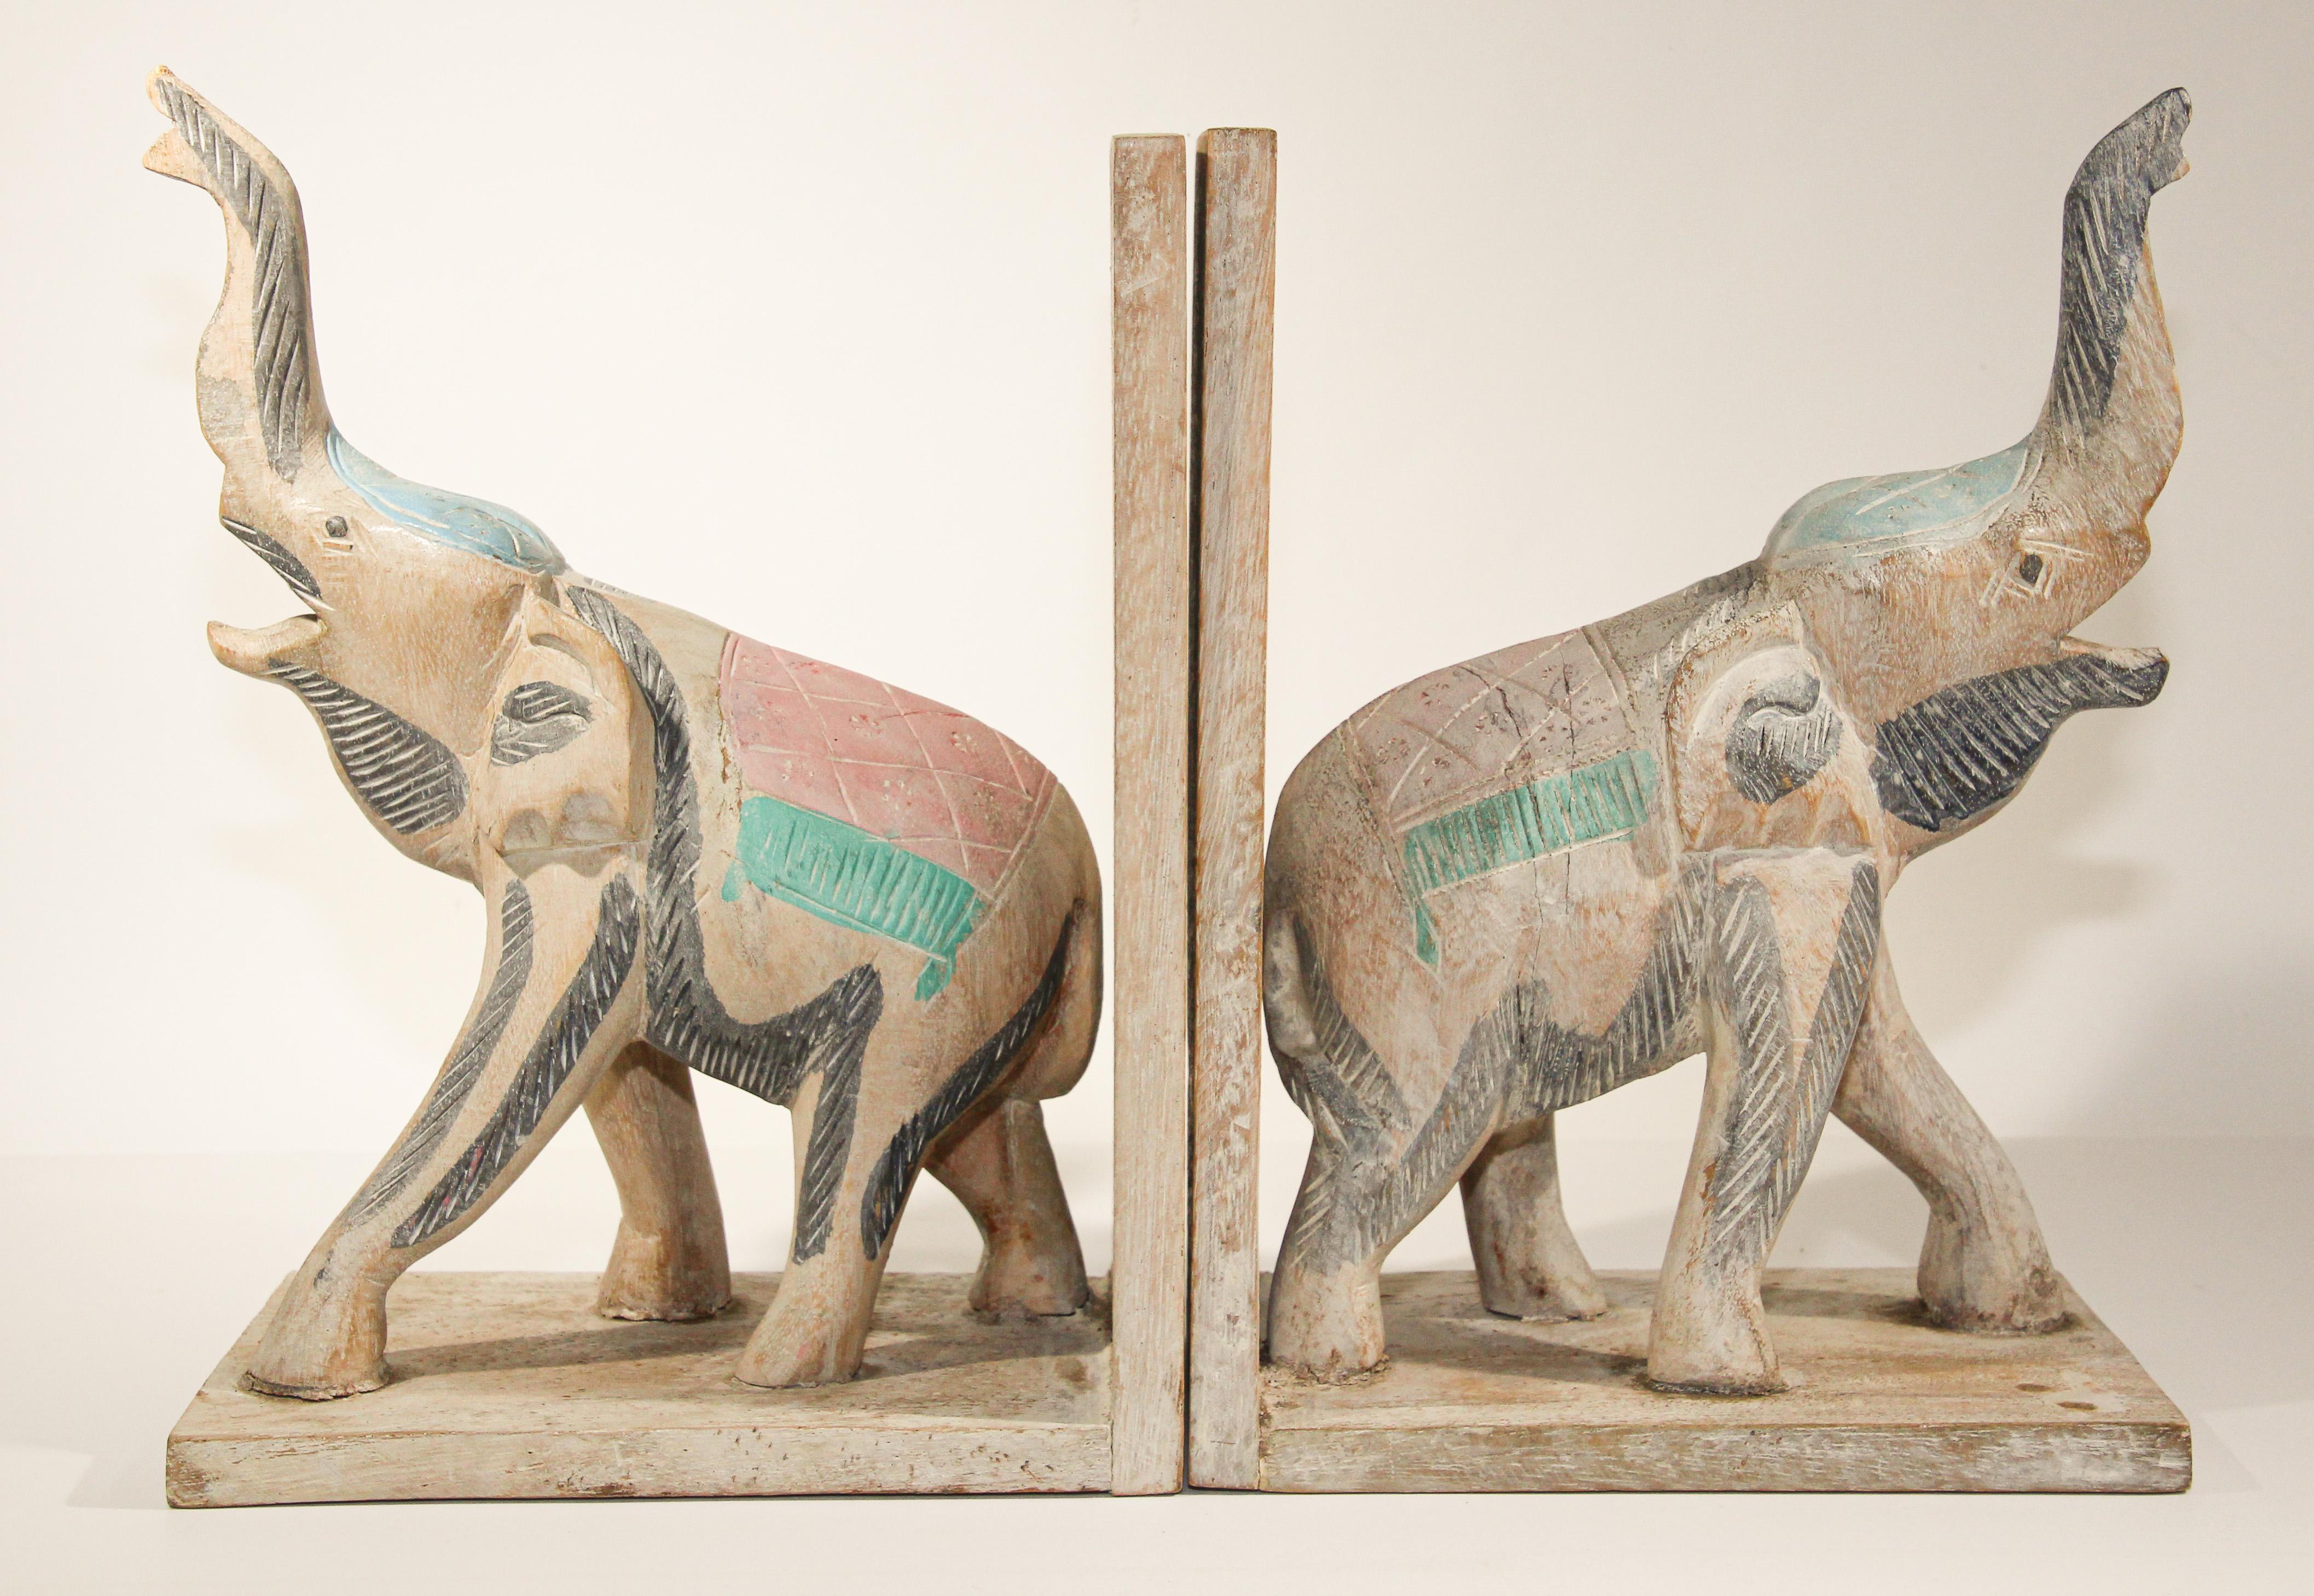 Belle paire de serre-livres en bois d'éléphant d'Asie sculptés à la main.
grand serre-livres éléphant sculpté à la main avec la trompe en haut, pour les asiatiques cela représente la bonne santé dans le Fen Shui.
Ils sont sculptés et peints à la